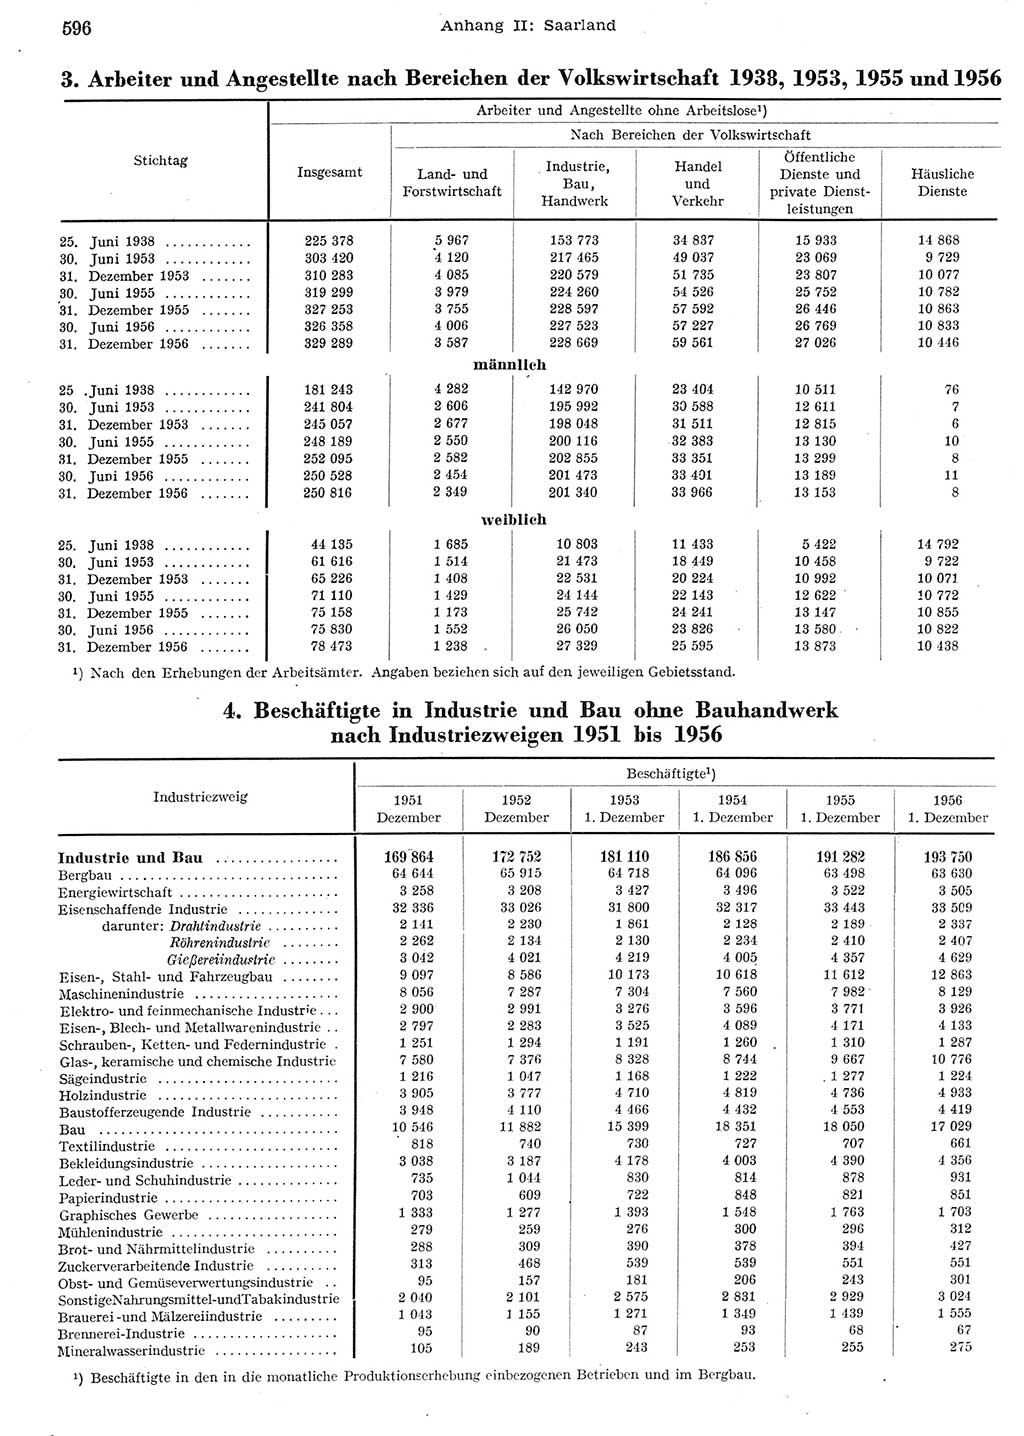 Statistisches Jahrbuch der Deutschen Demokratischen Republik (DDR) 1956, Seite 596 (Stat. Jb. DDR 1956, S. 596)